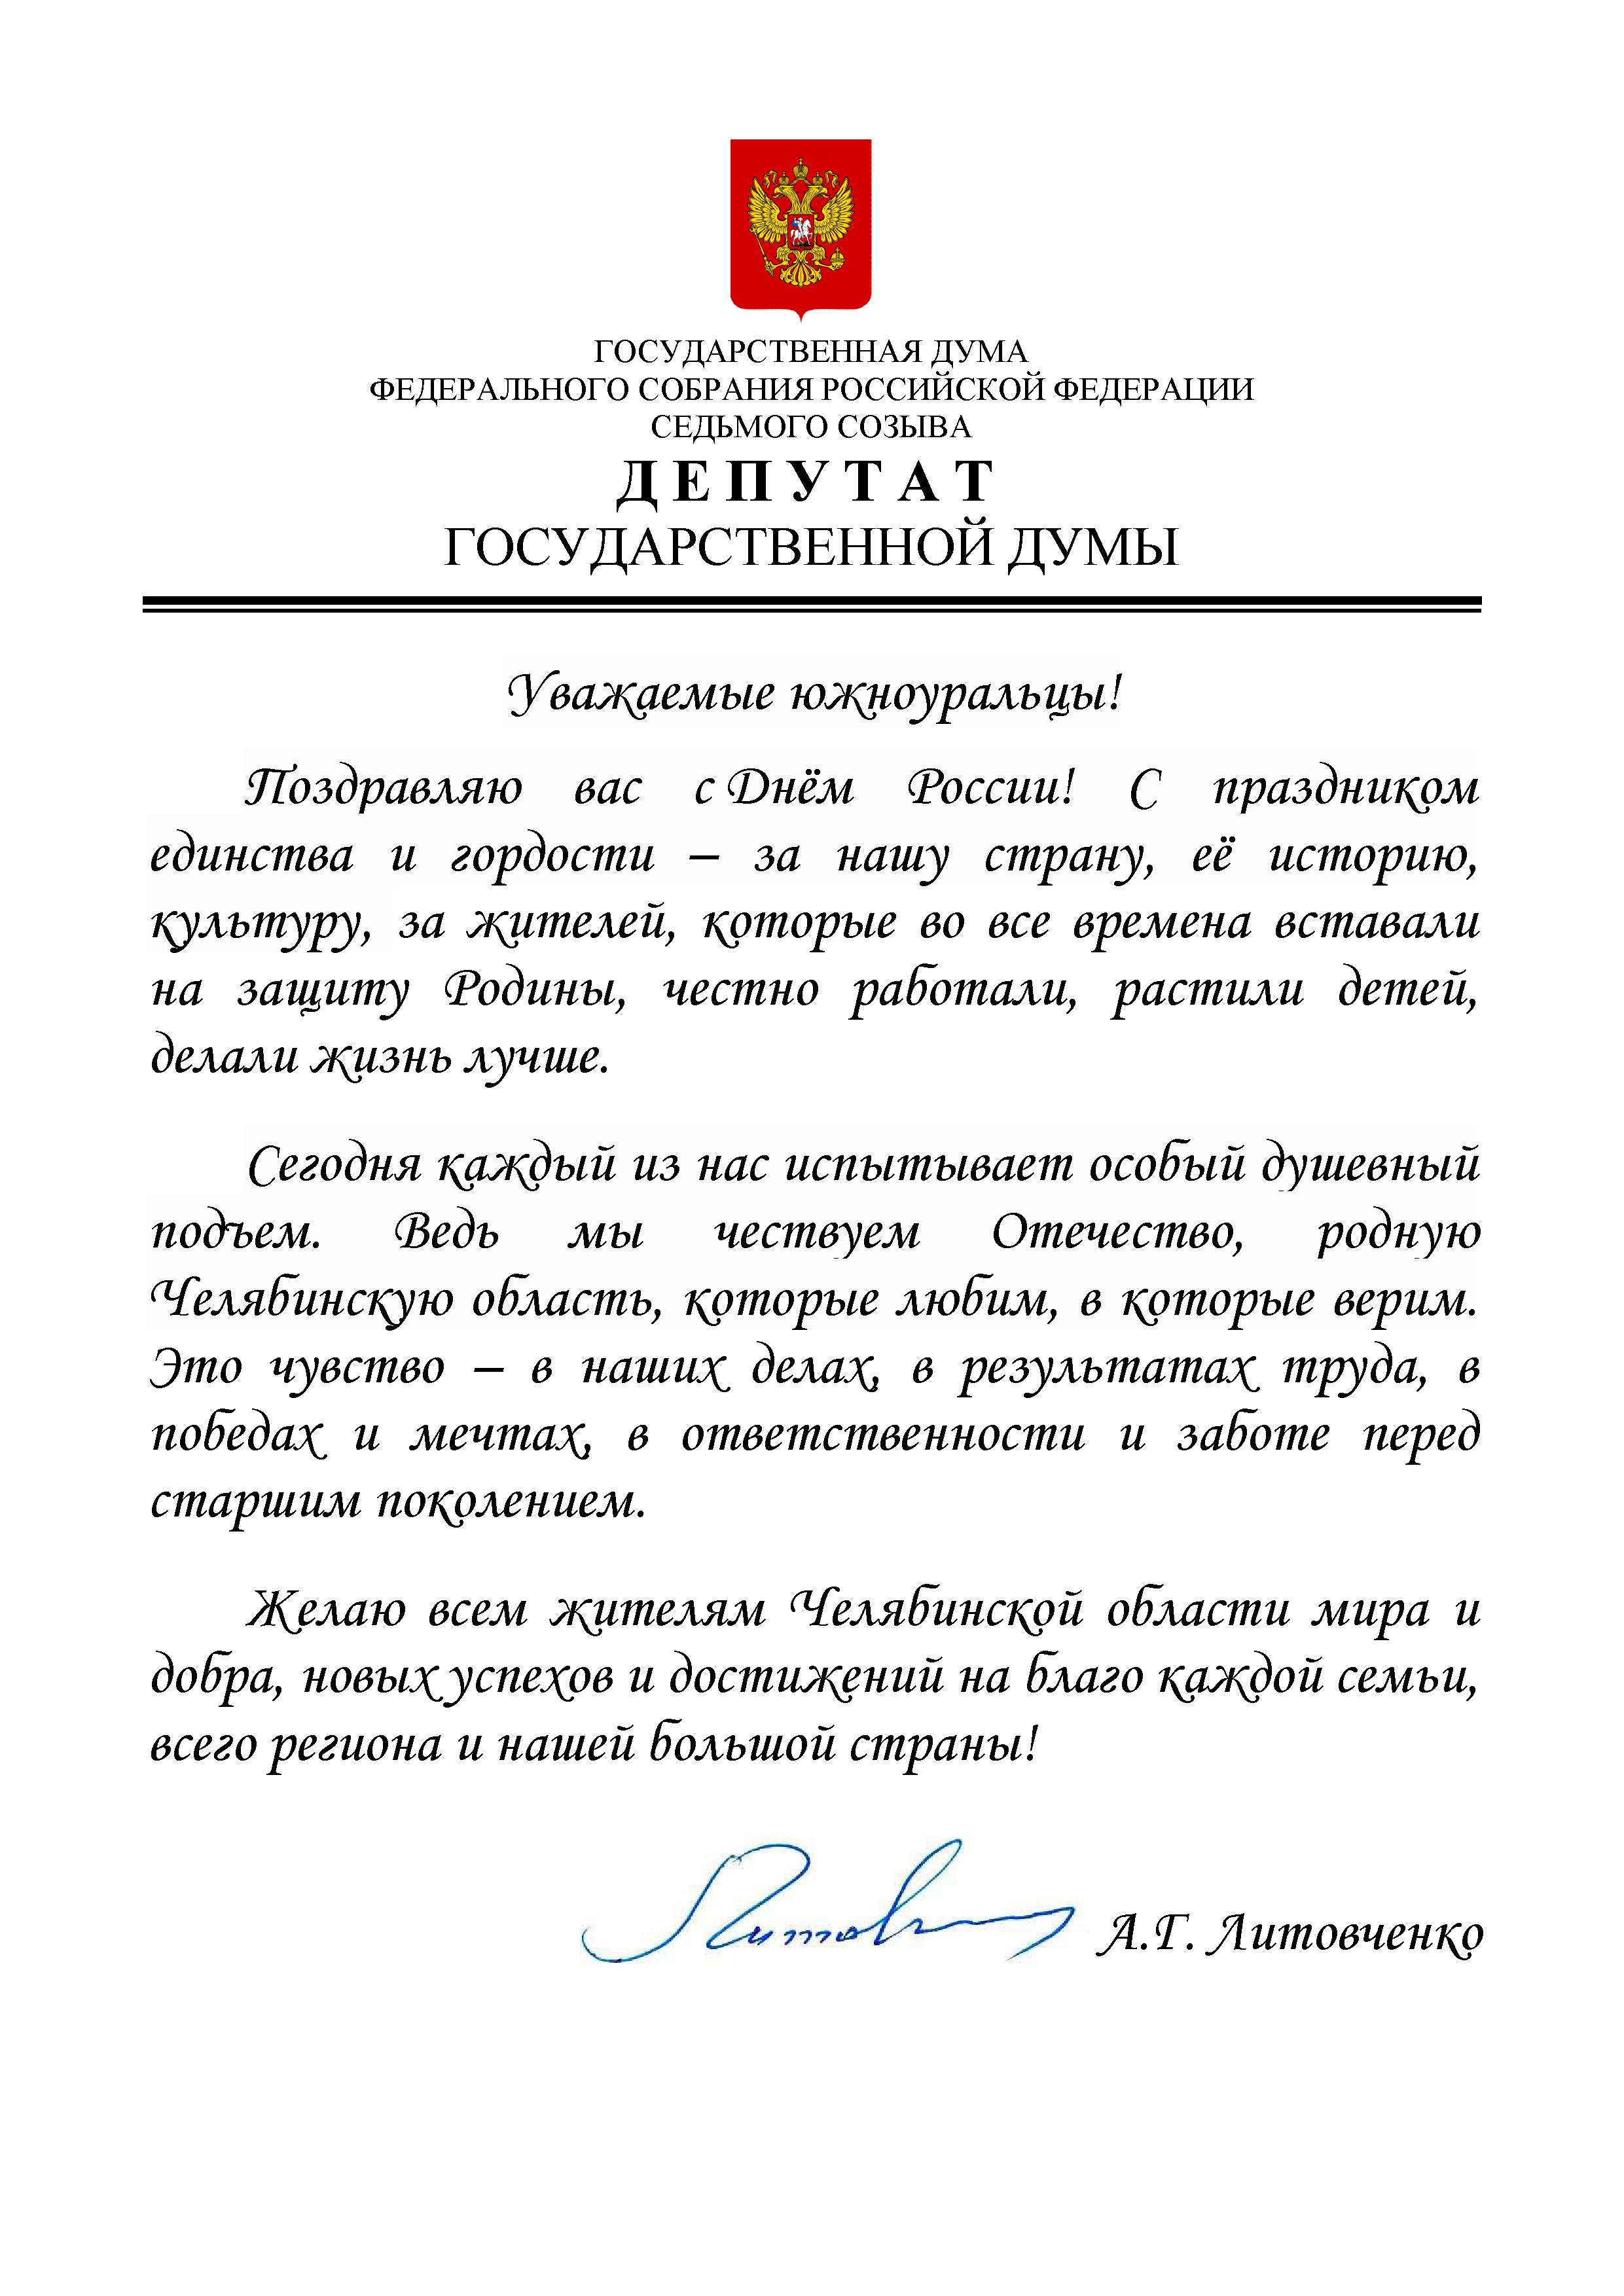 Поздравление с днем России 12 июня от депутата